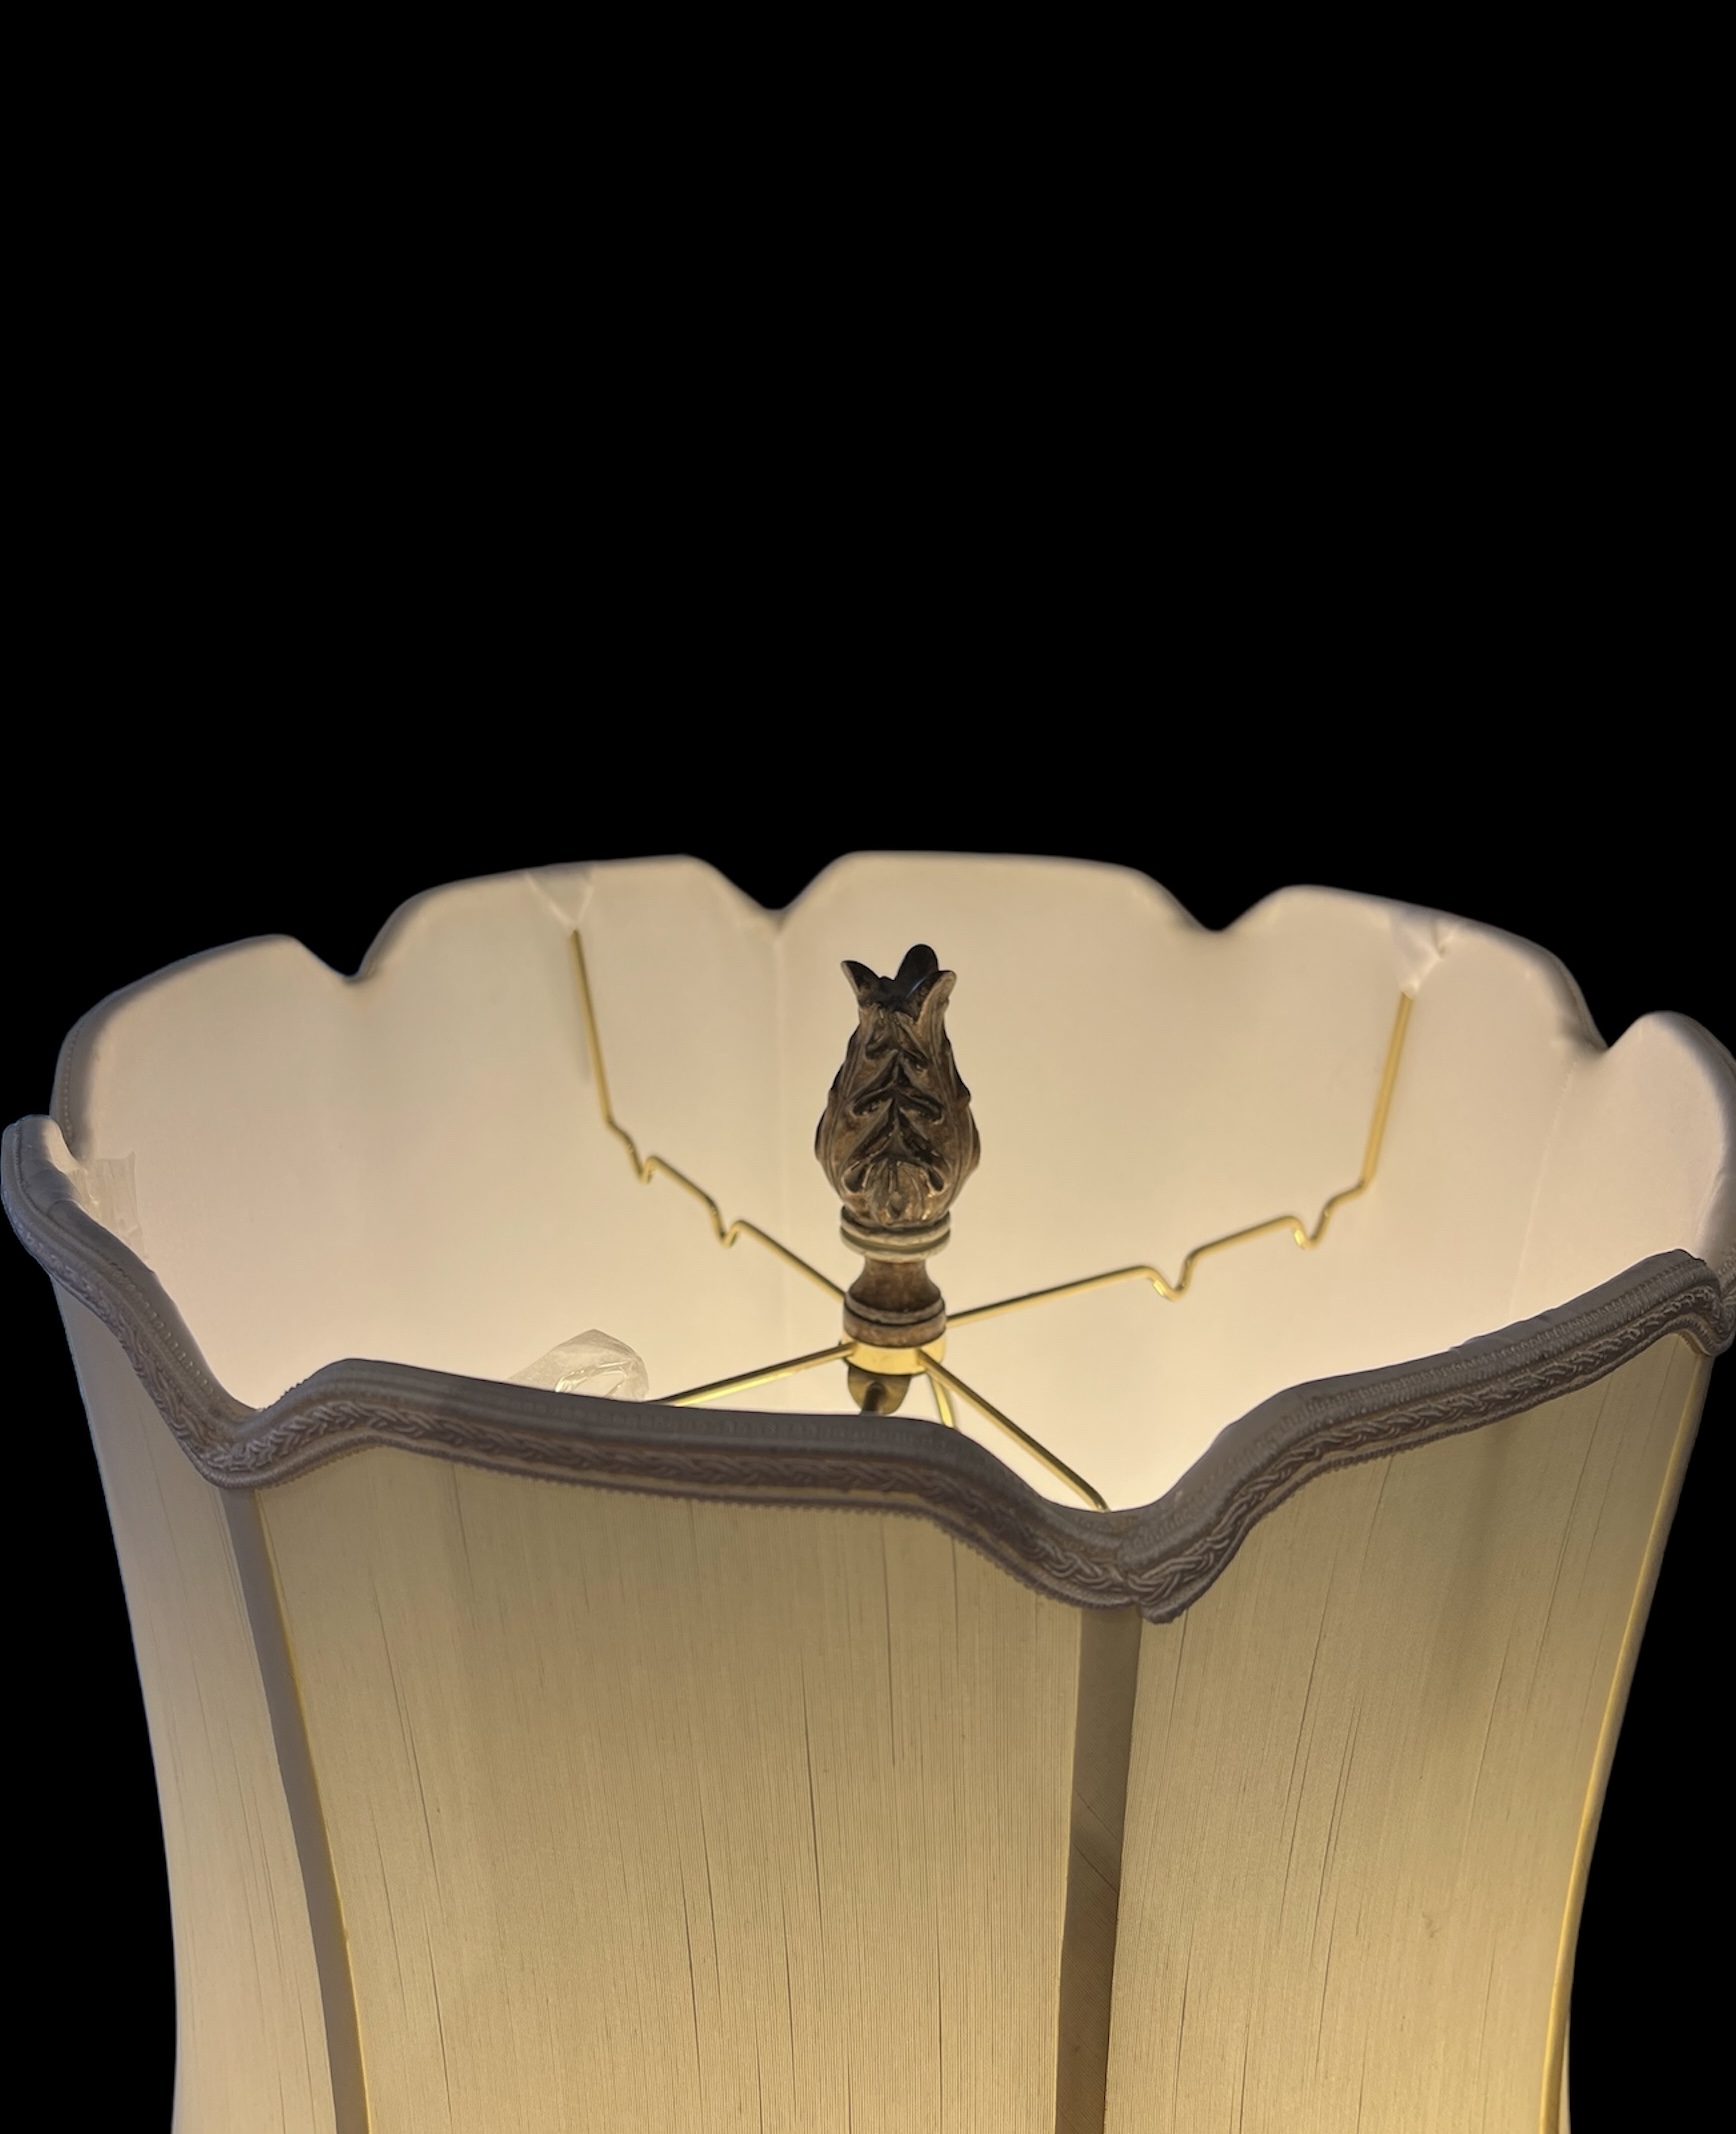 Mid Century Avventurina Murano Glass Lamp